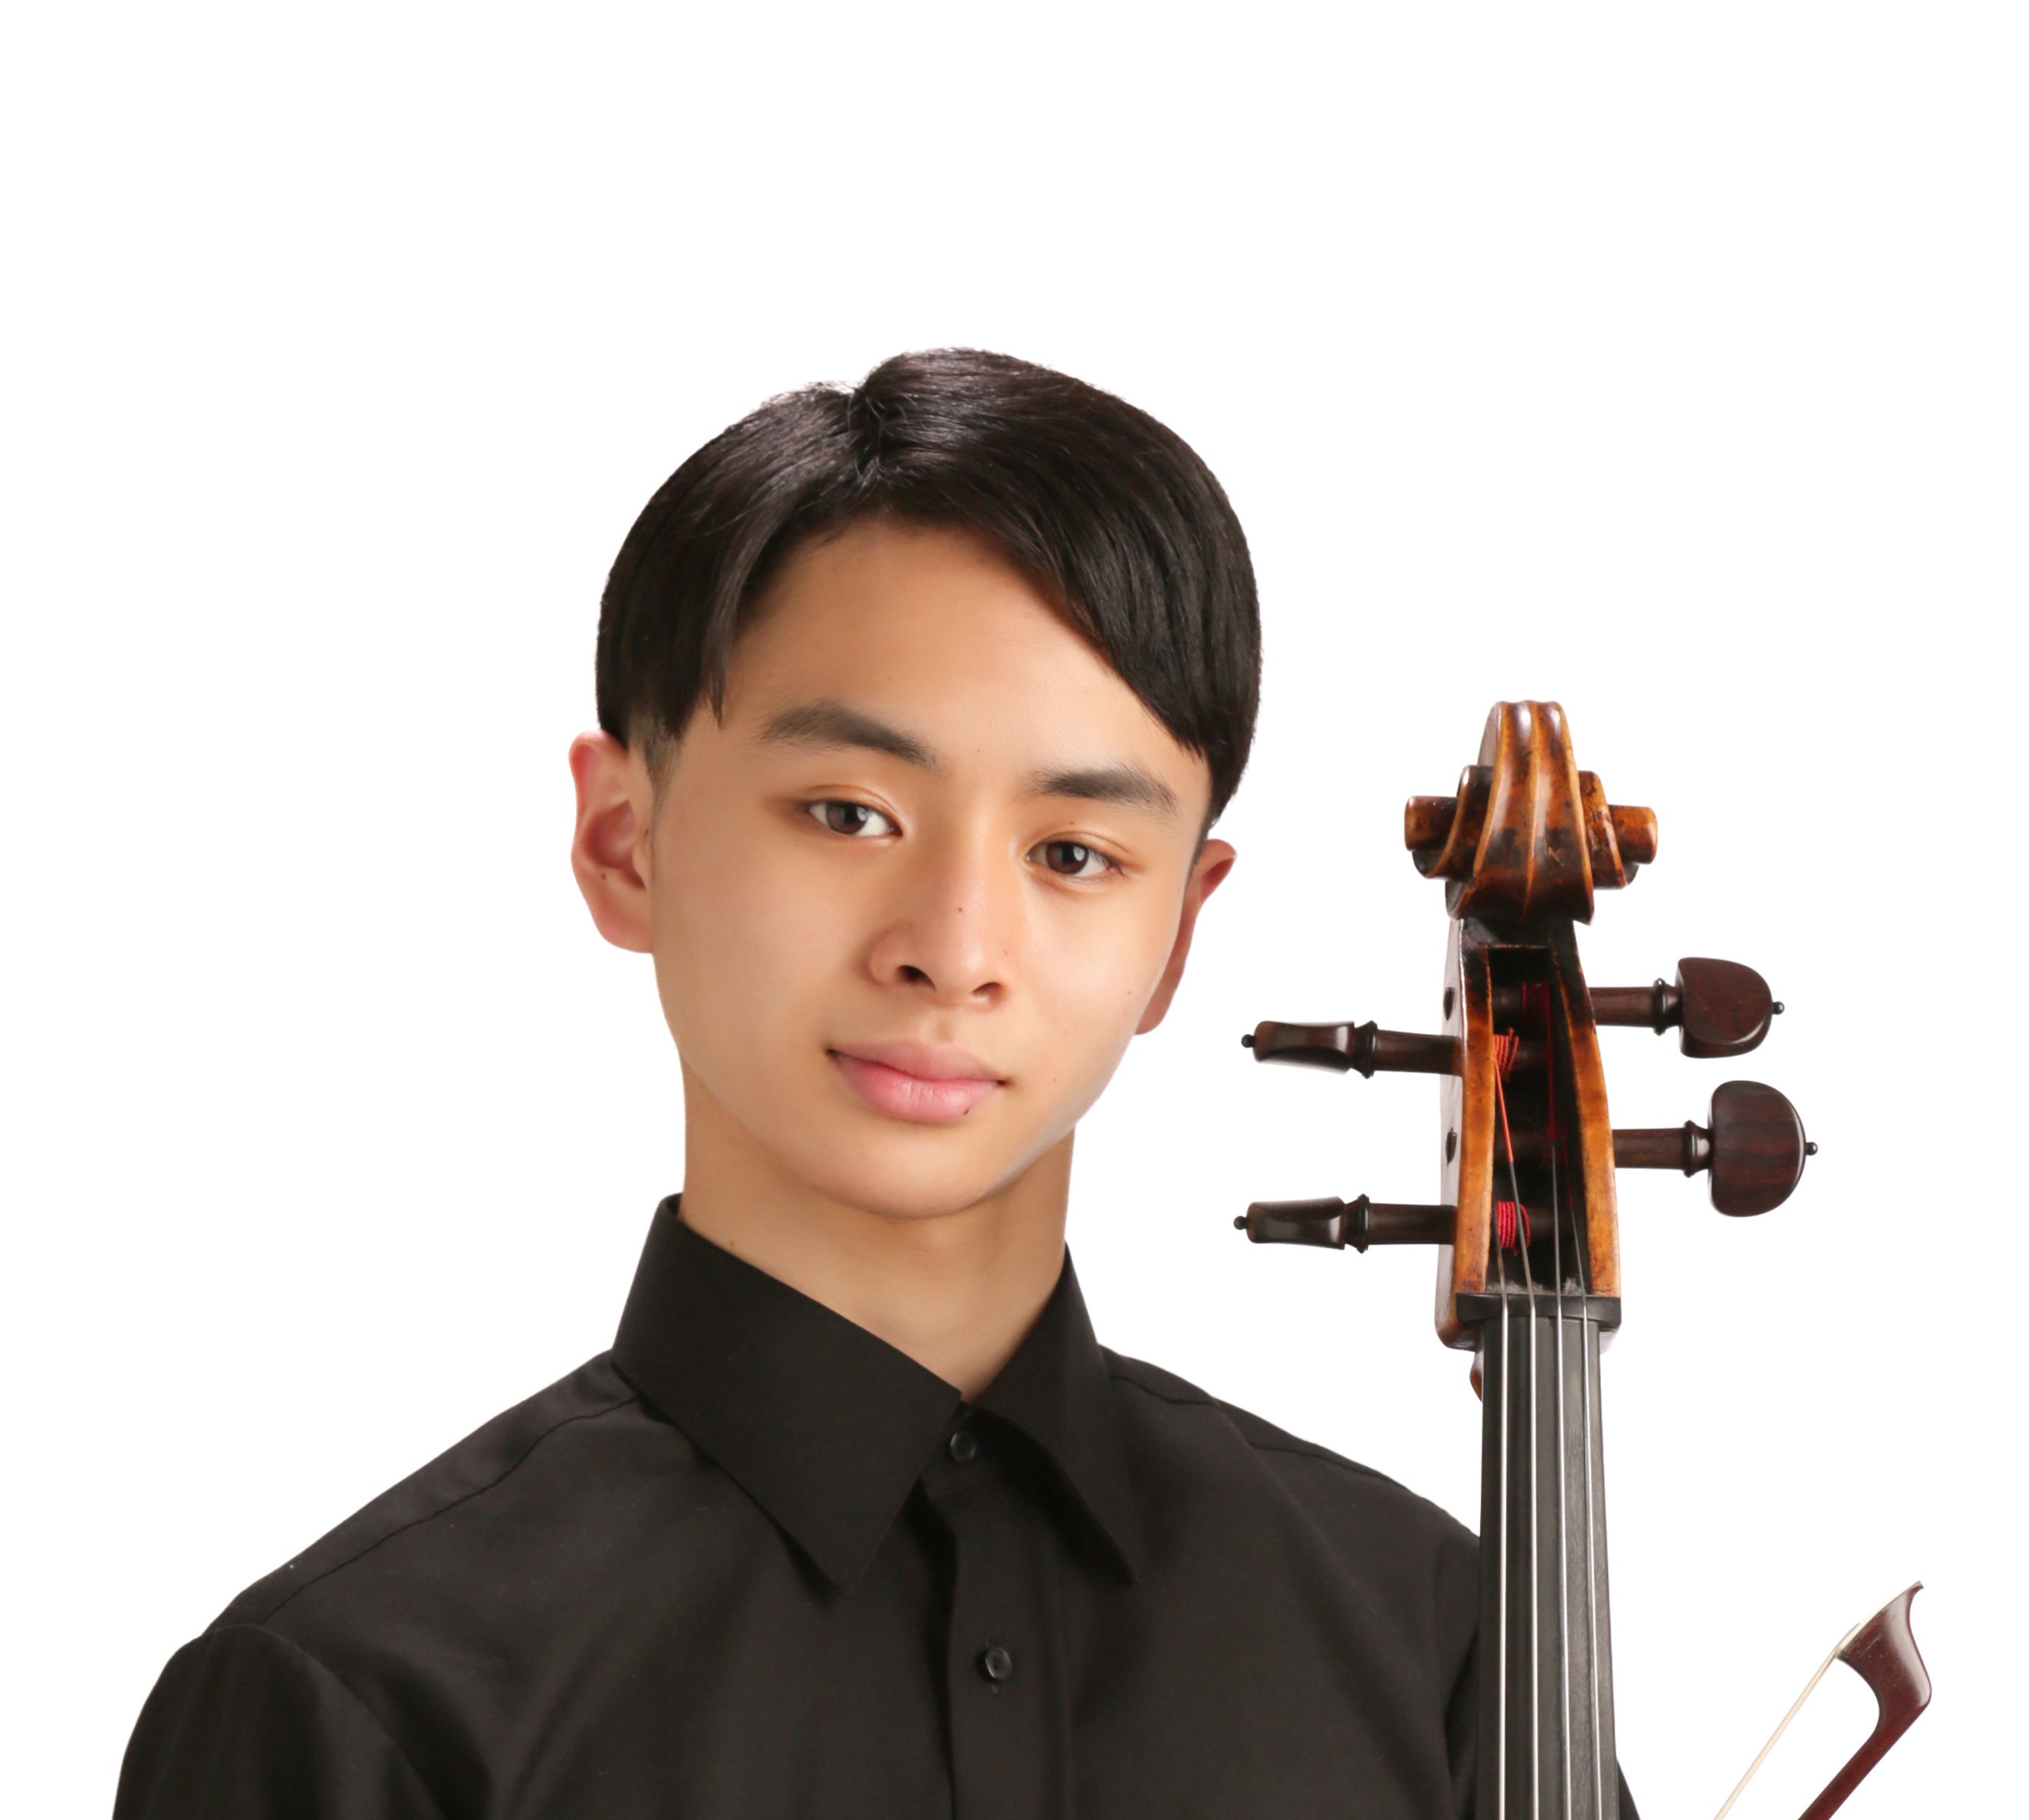 藤原 寛太さん（本校1年在学）が『学生音楽コンクール』チェロ部門で第1位に